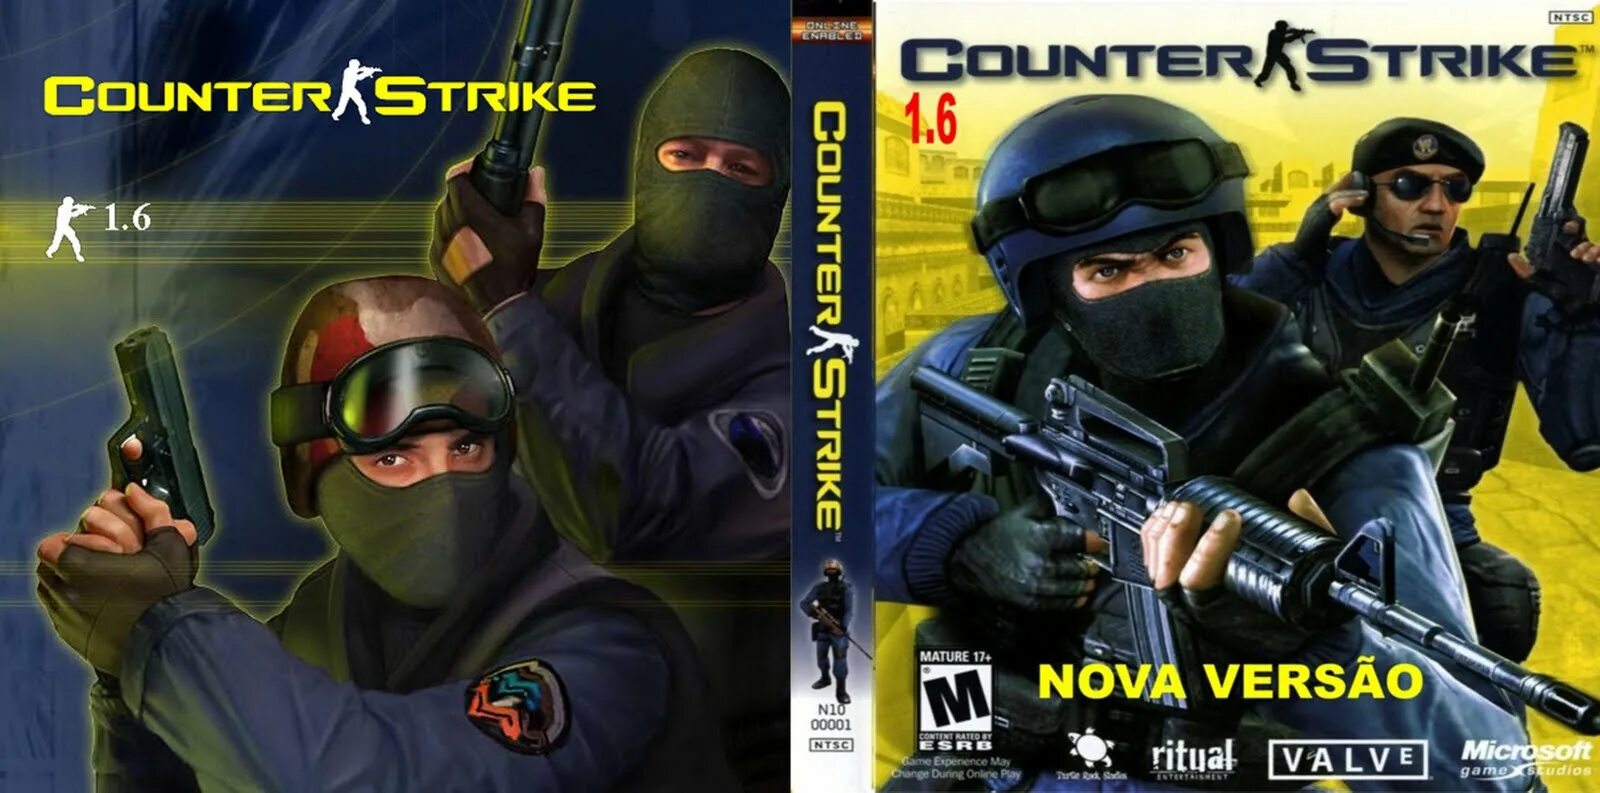 Counter Strike 1.6 обложка игры. Counter Strike 1.6 диск. Диск КС 1.6. Counter Strike 1.6 обложка первоначальная. Обложка кс